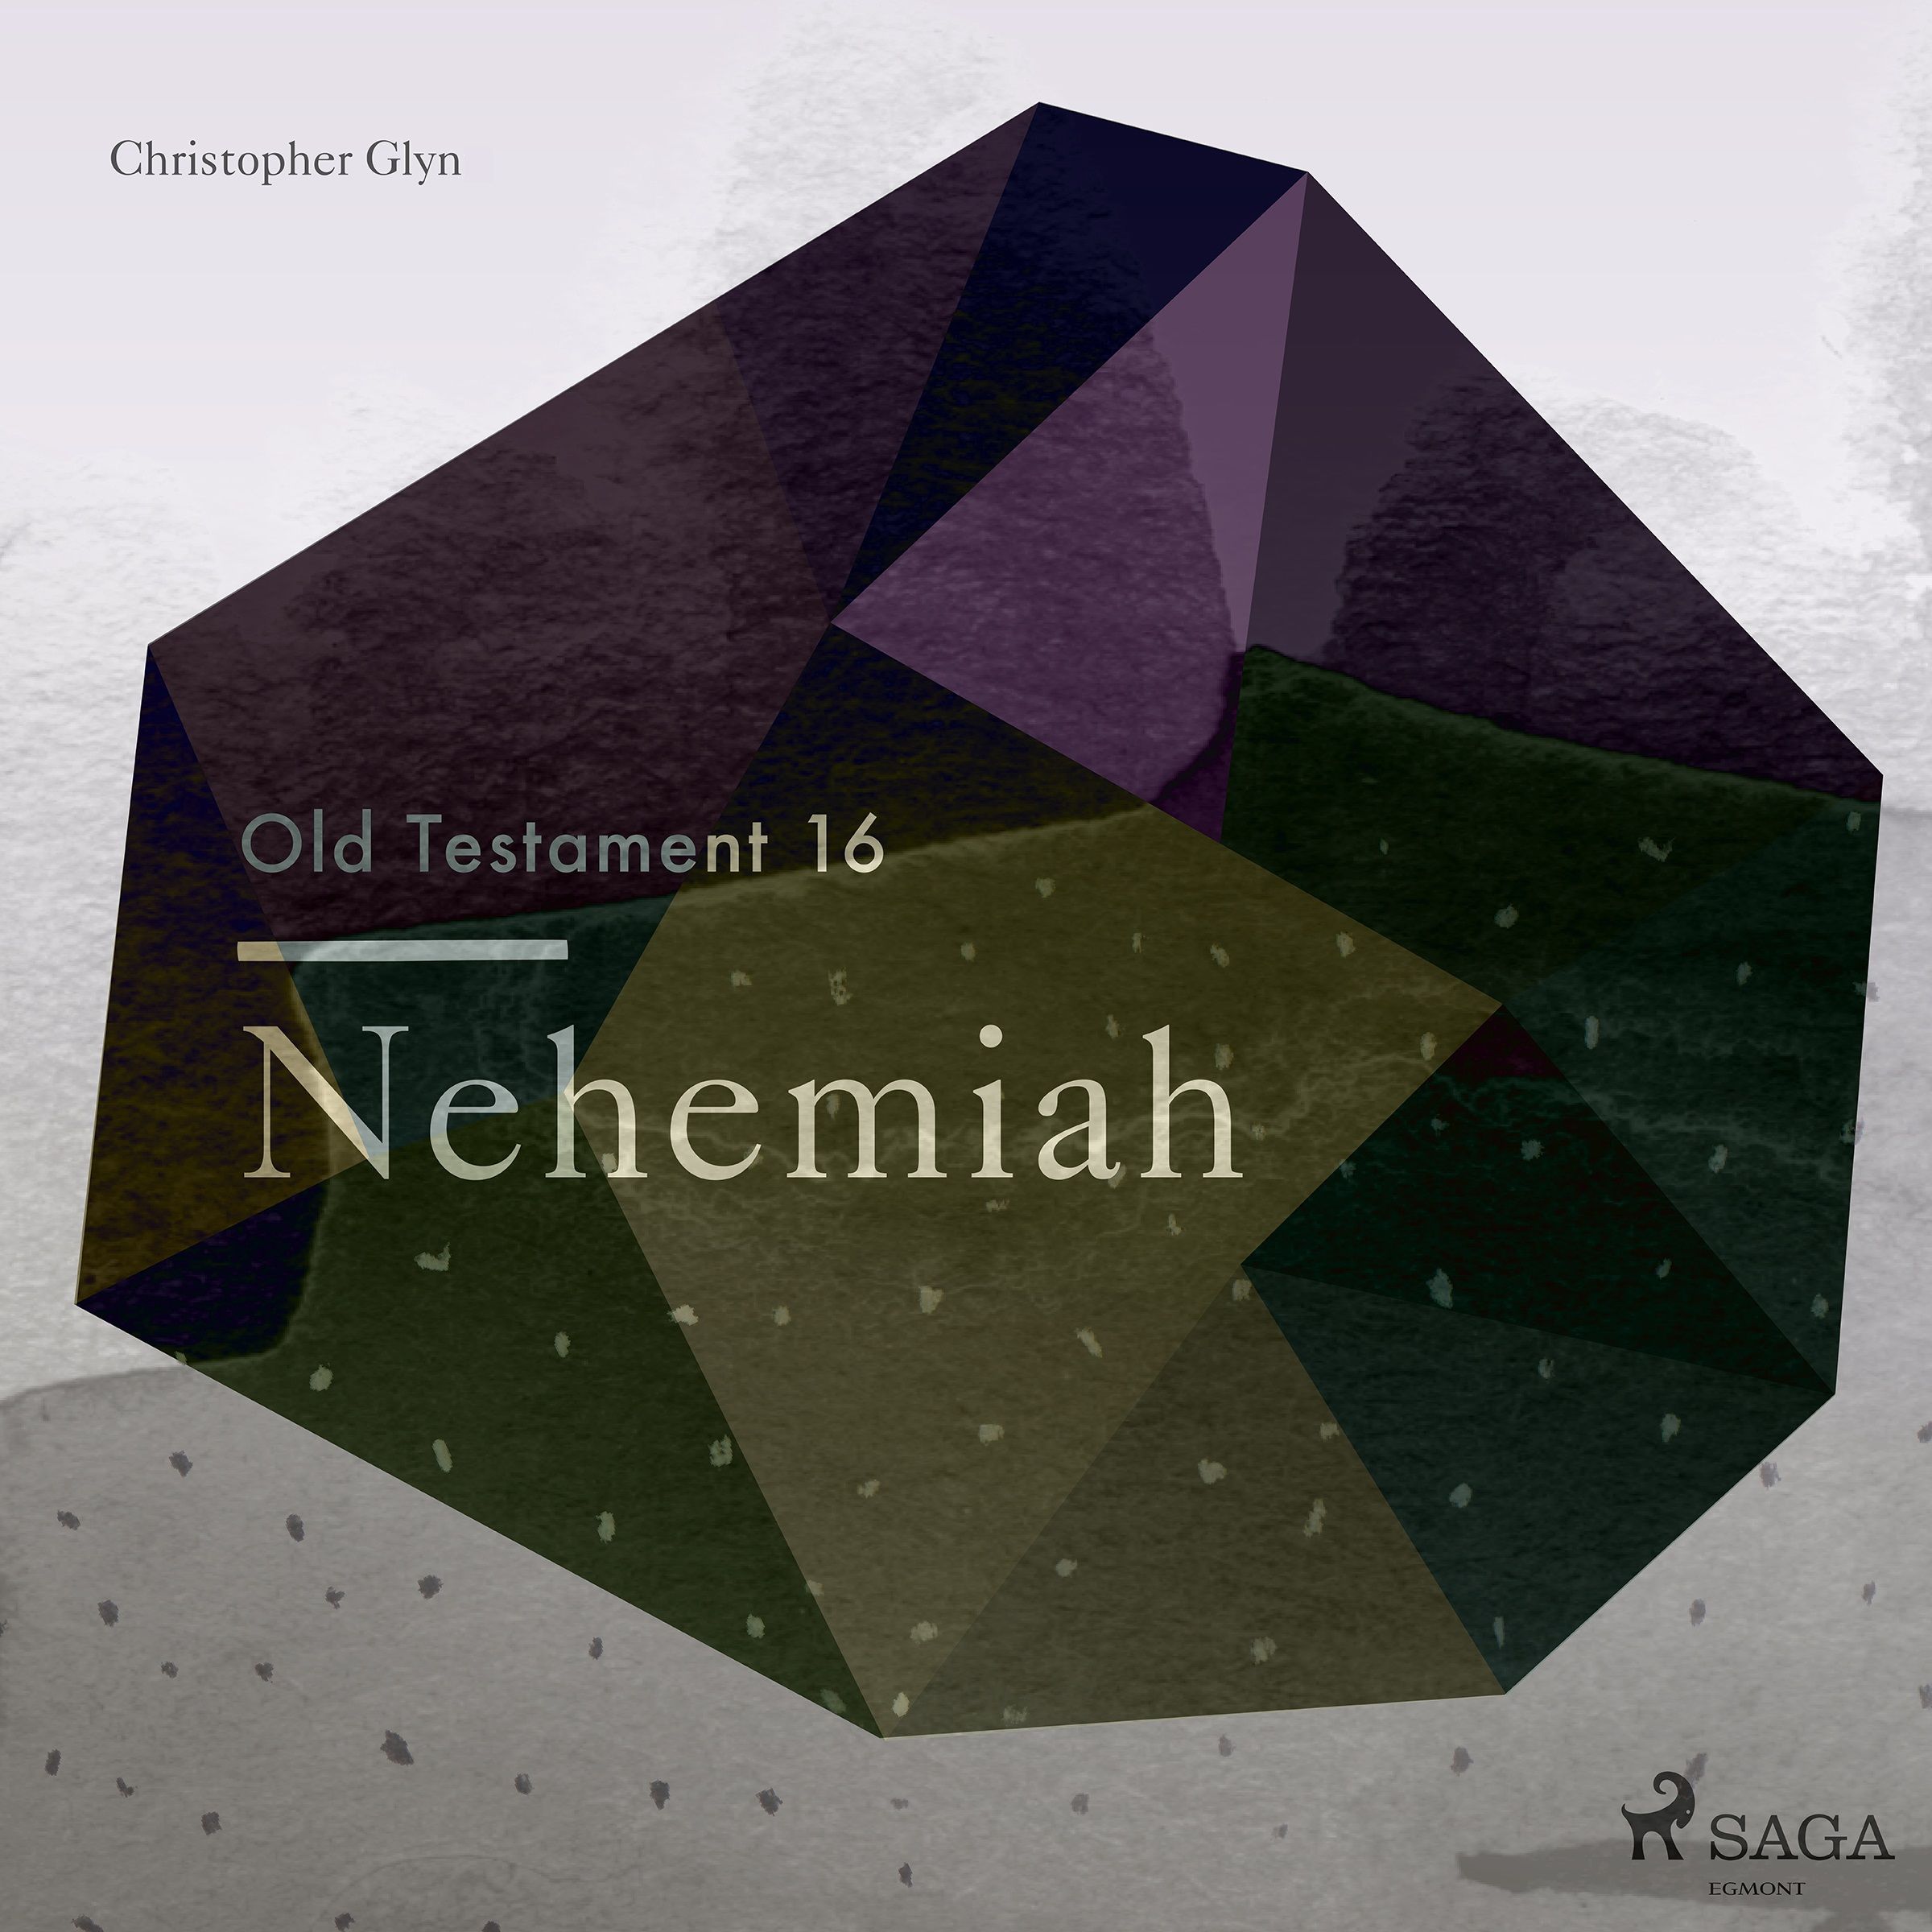 The Old Testament 16 - Nehemiah, lydbog af Christopher Glyn